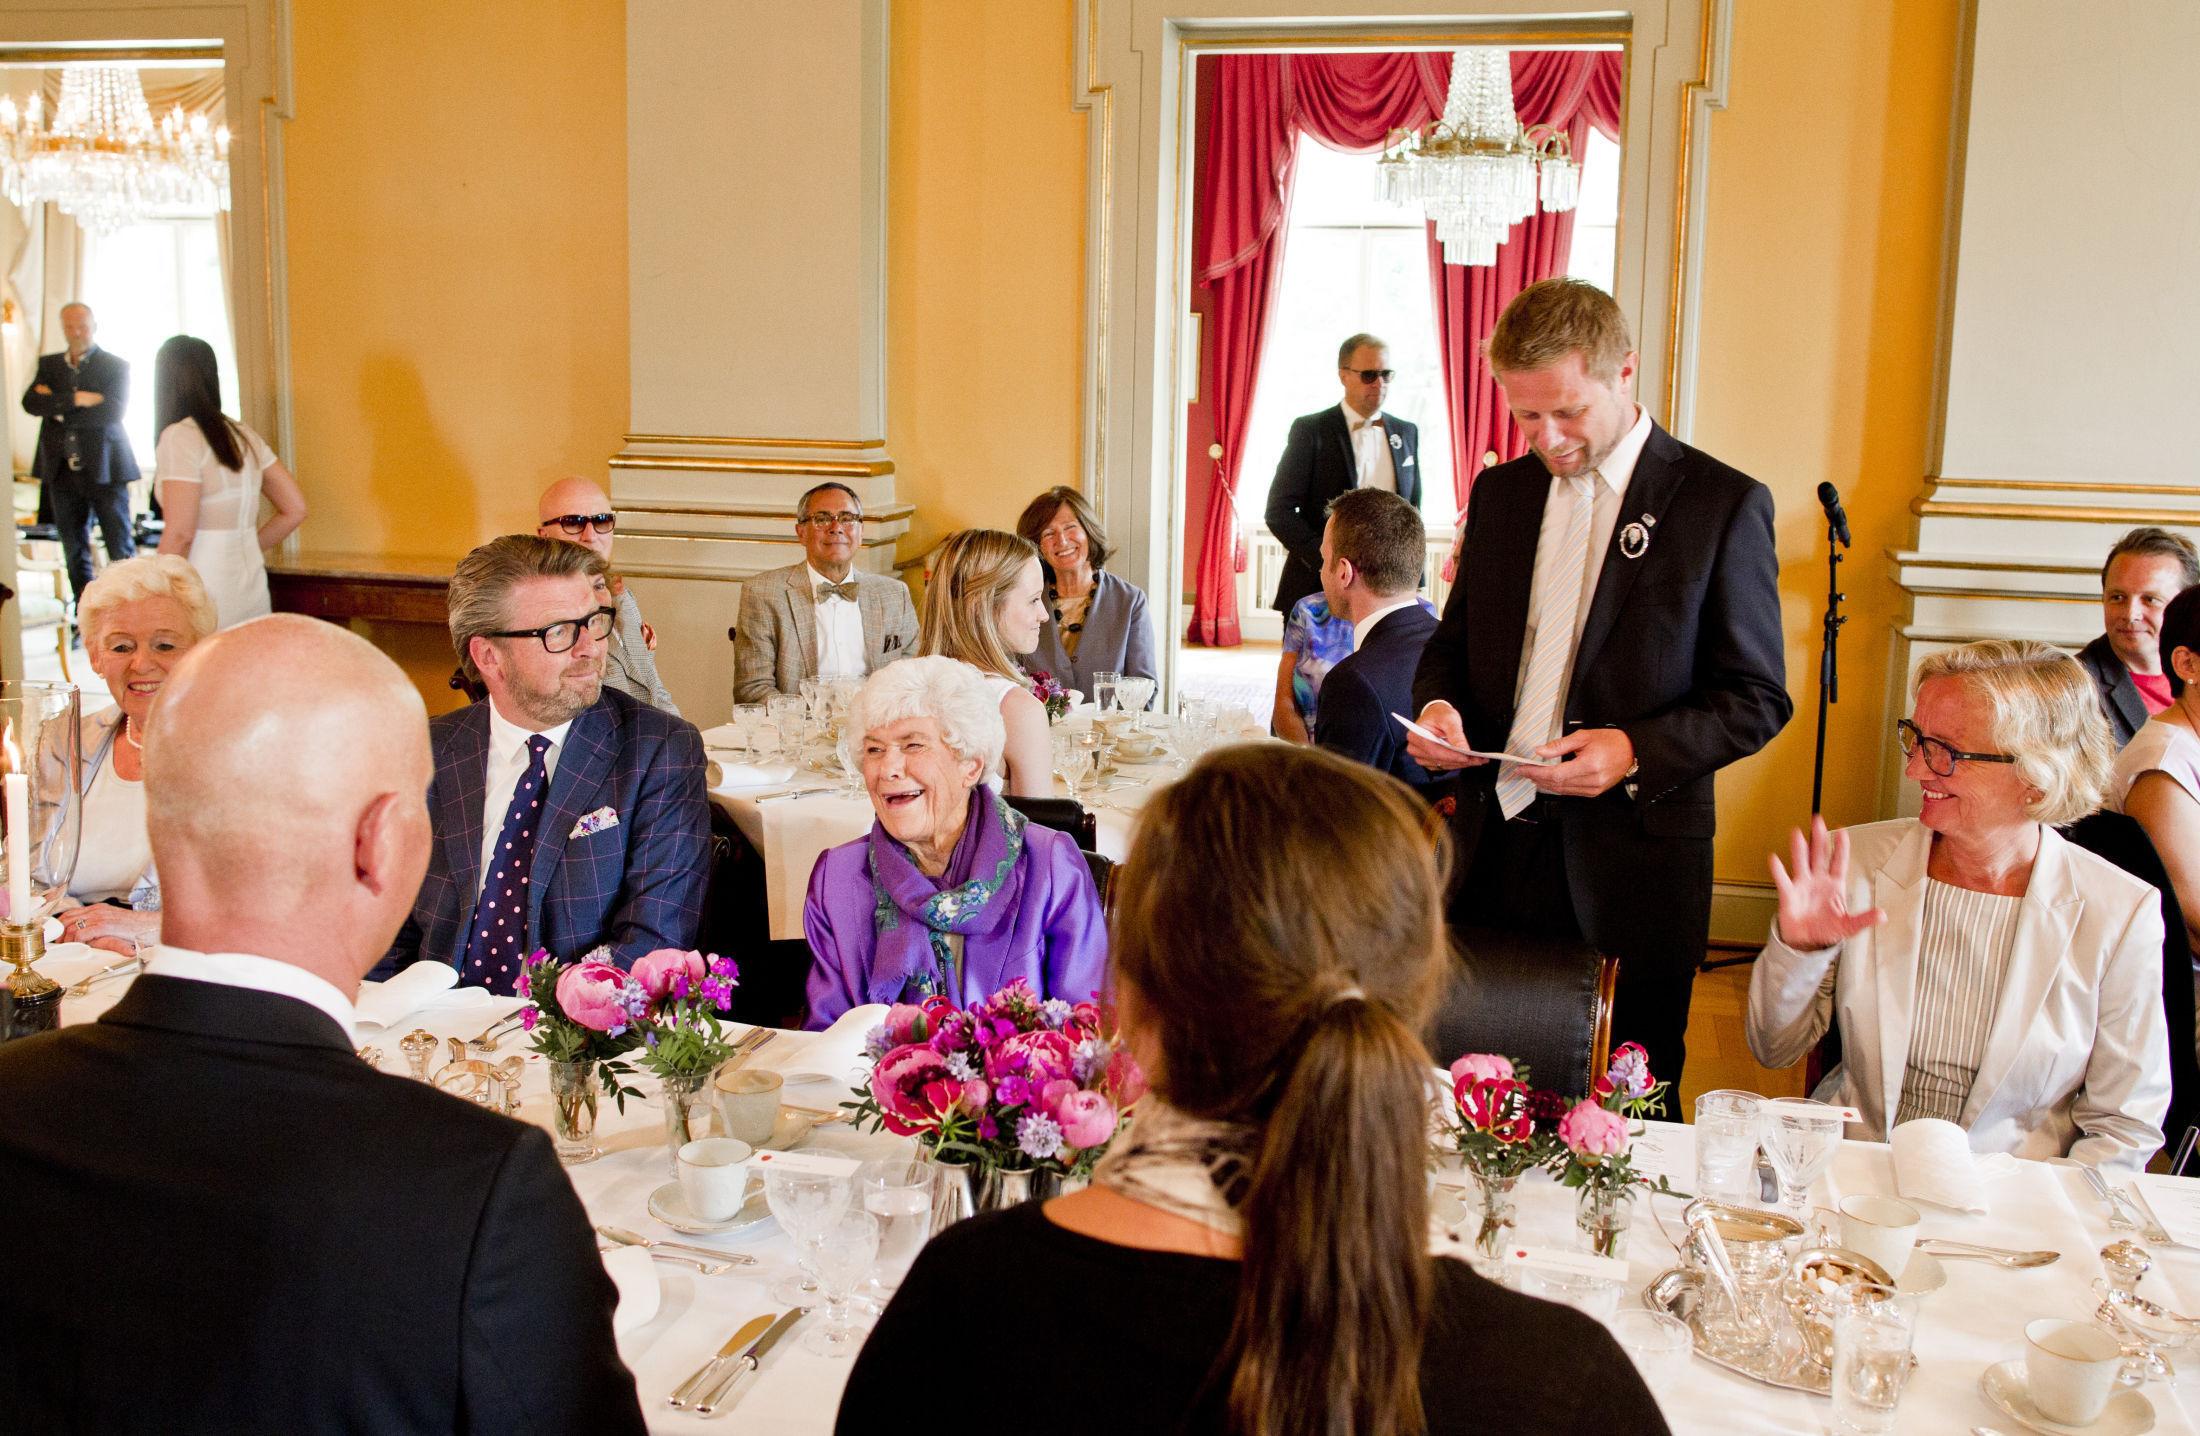 HEDRES: Helse- og omsorgsminister Bent Høie ønsket velkommen til feiring av 90-årsjubilanten i regjeringens representasjonsbolig. Foto: Vegard Grøtt / NTB scanpix